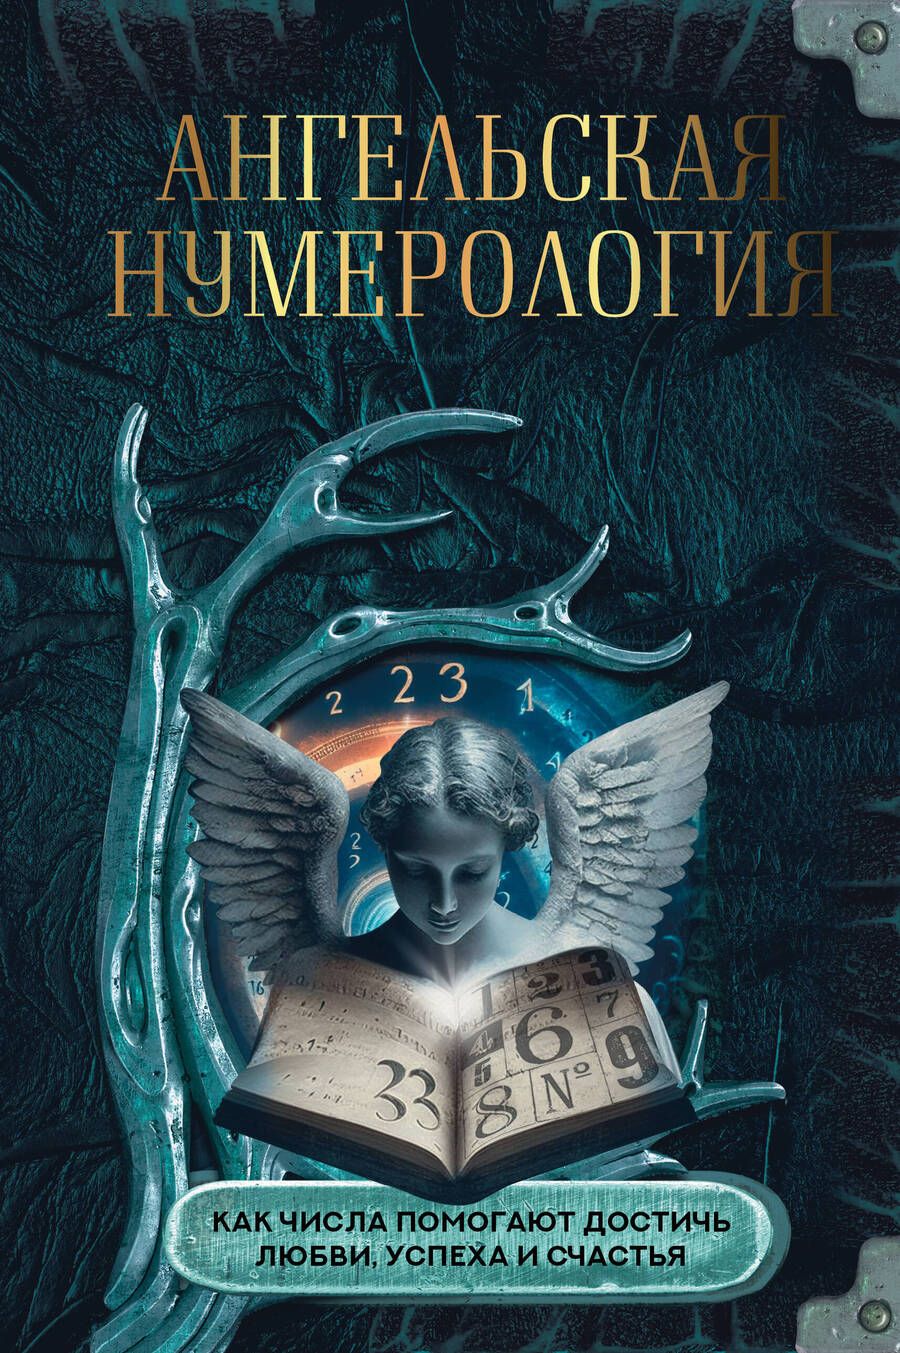 Обложка книги "Яблоков, Яблокова: Ангельская нумерология. Как числа помогают достичь любви, успеха и счастья"